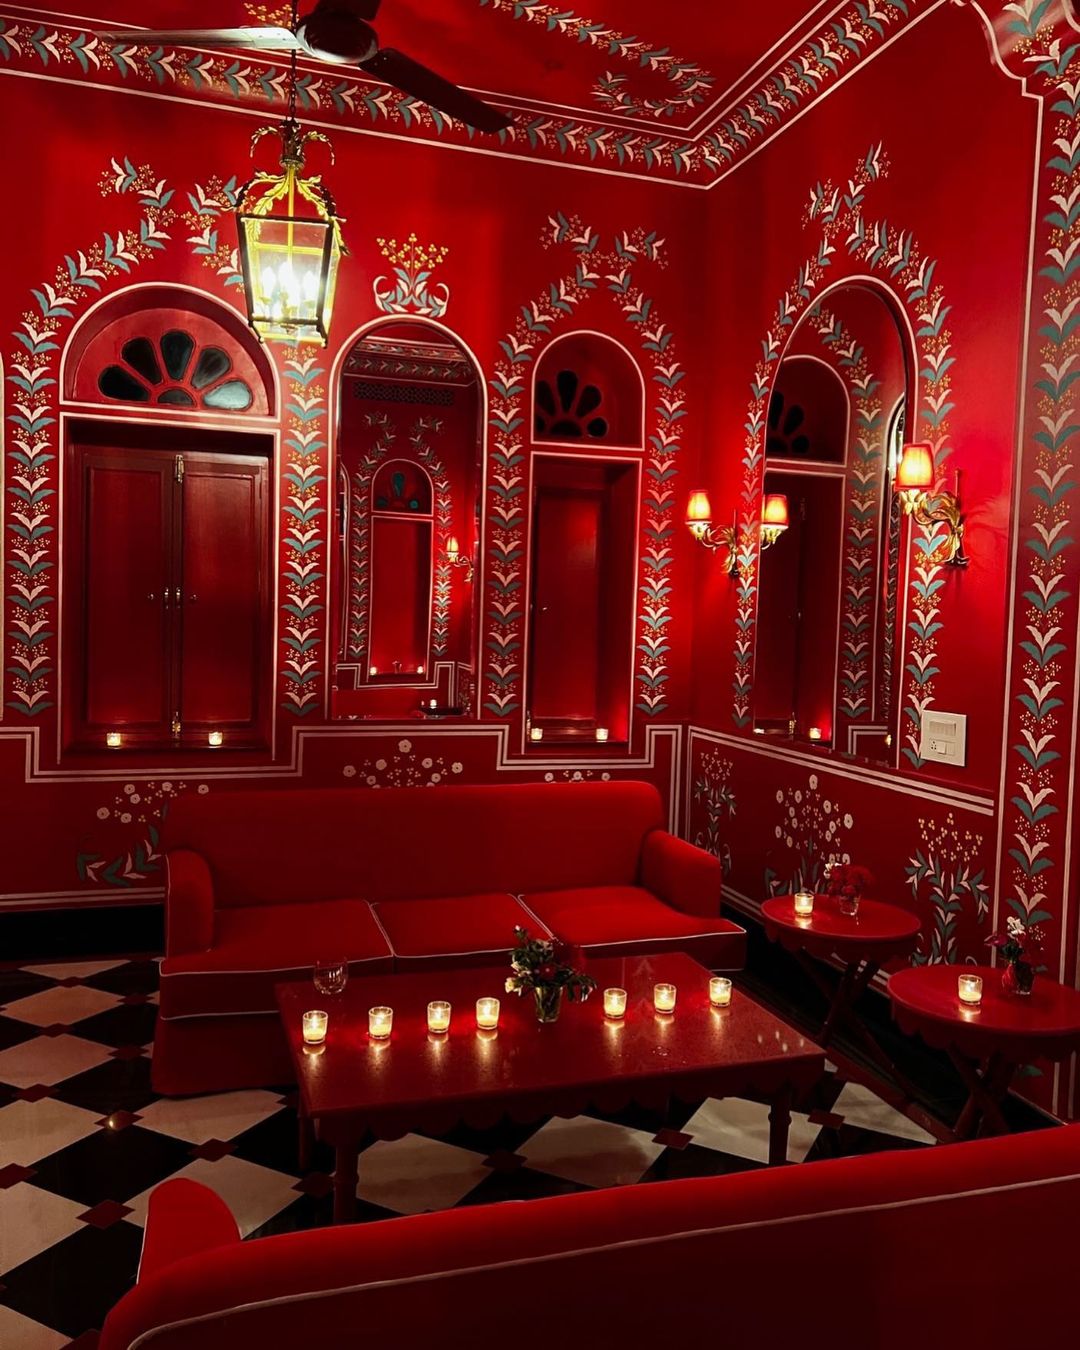 Το πολυτελές Boutique Hotel στην Ινδία είναι ένα κρυμμένο στολίδι περιτυλιγμένο στο κόκκινο